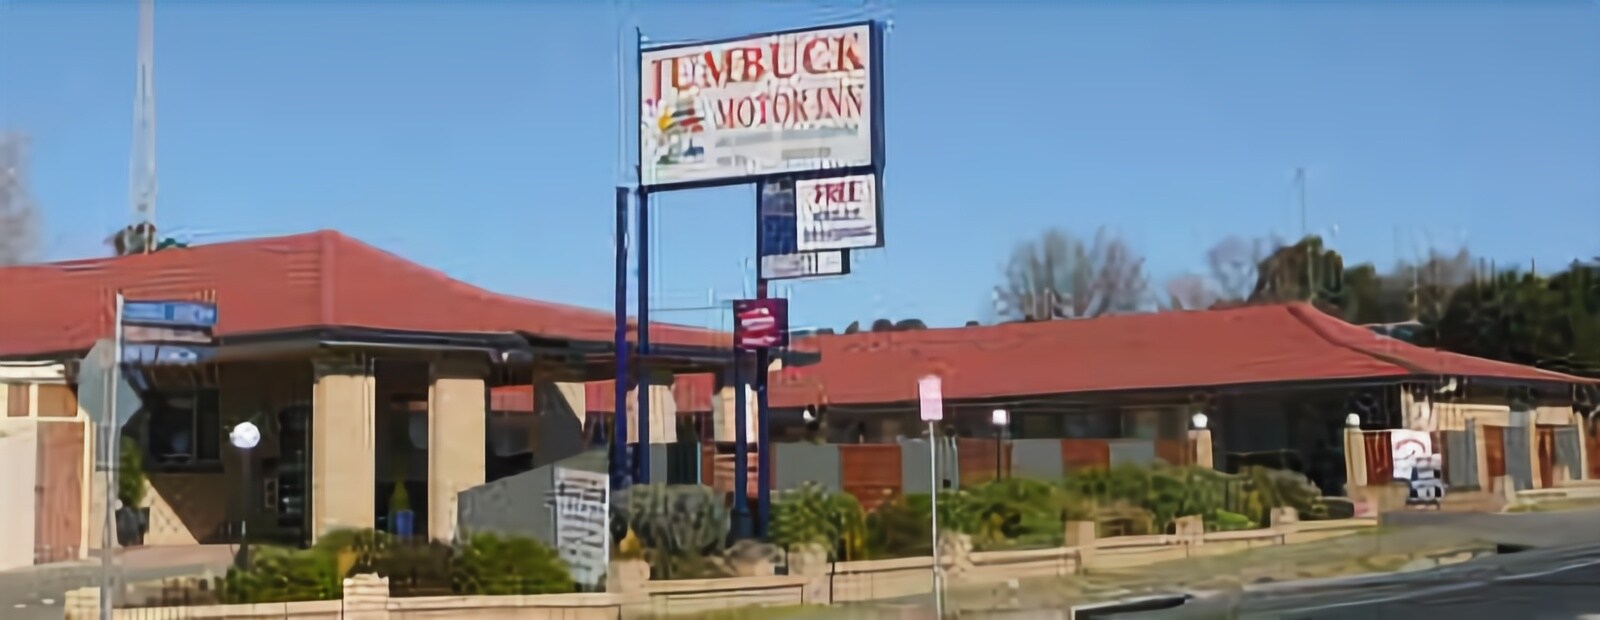 Jumbuck Motor Inn